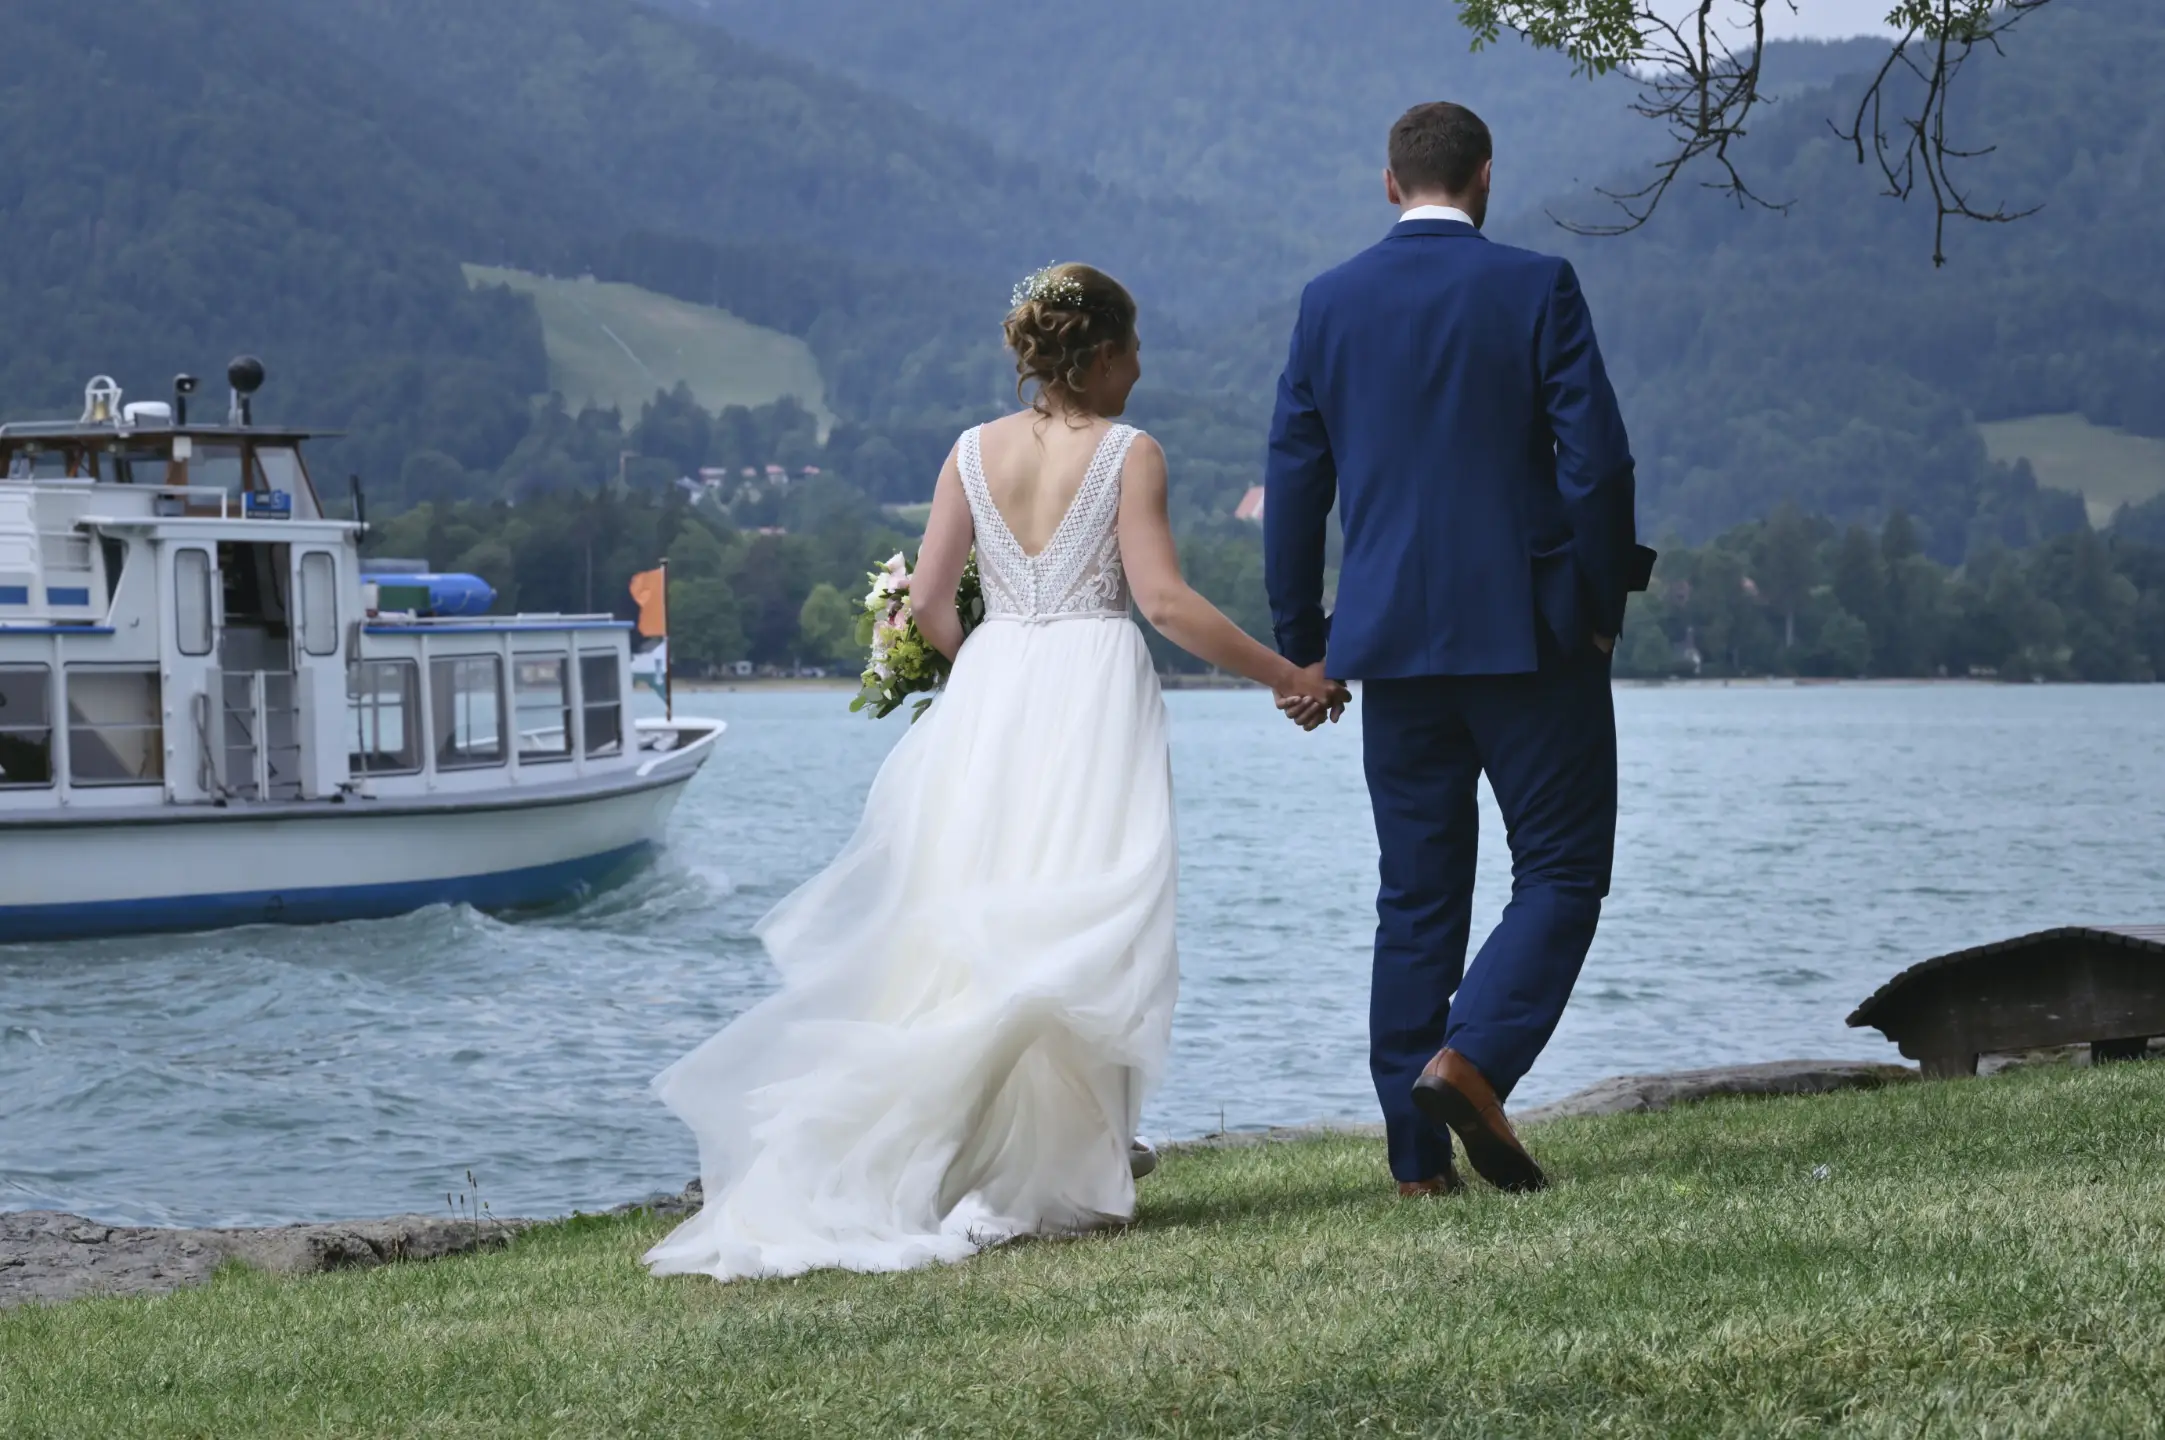 Hand in Hand am Ufer | Kreidt-Fotografie aus Olching - Romantische Hochzeitsfotografie, traumhafte Kulisse